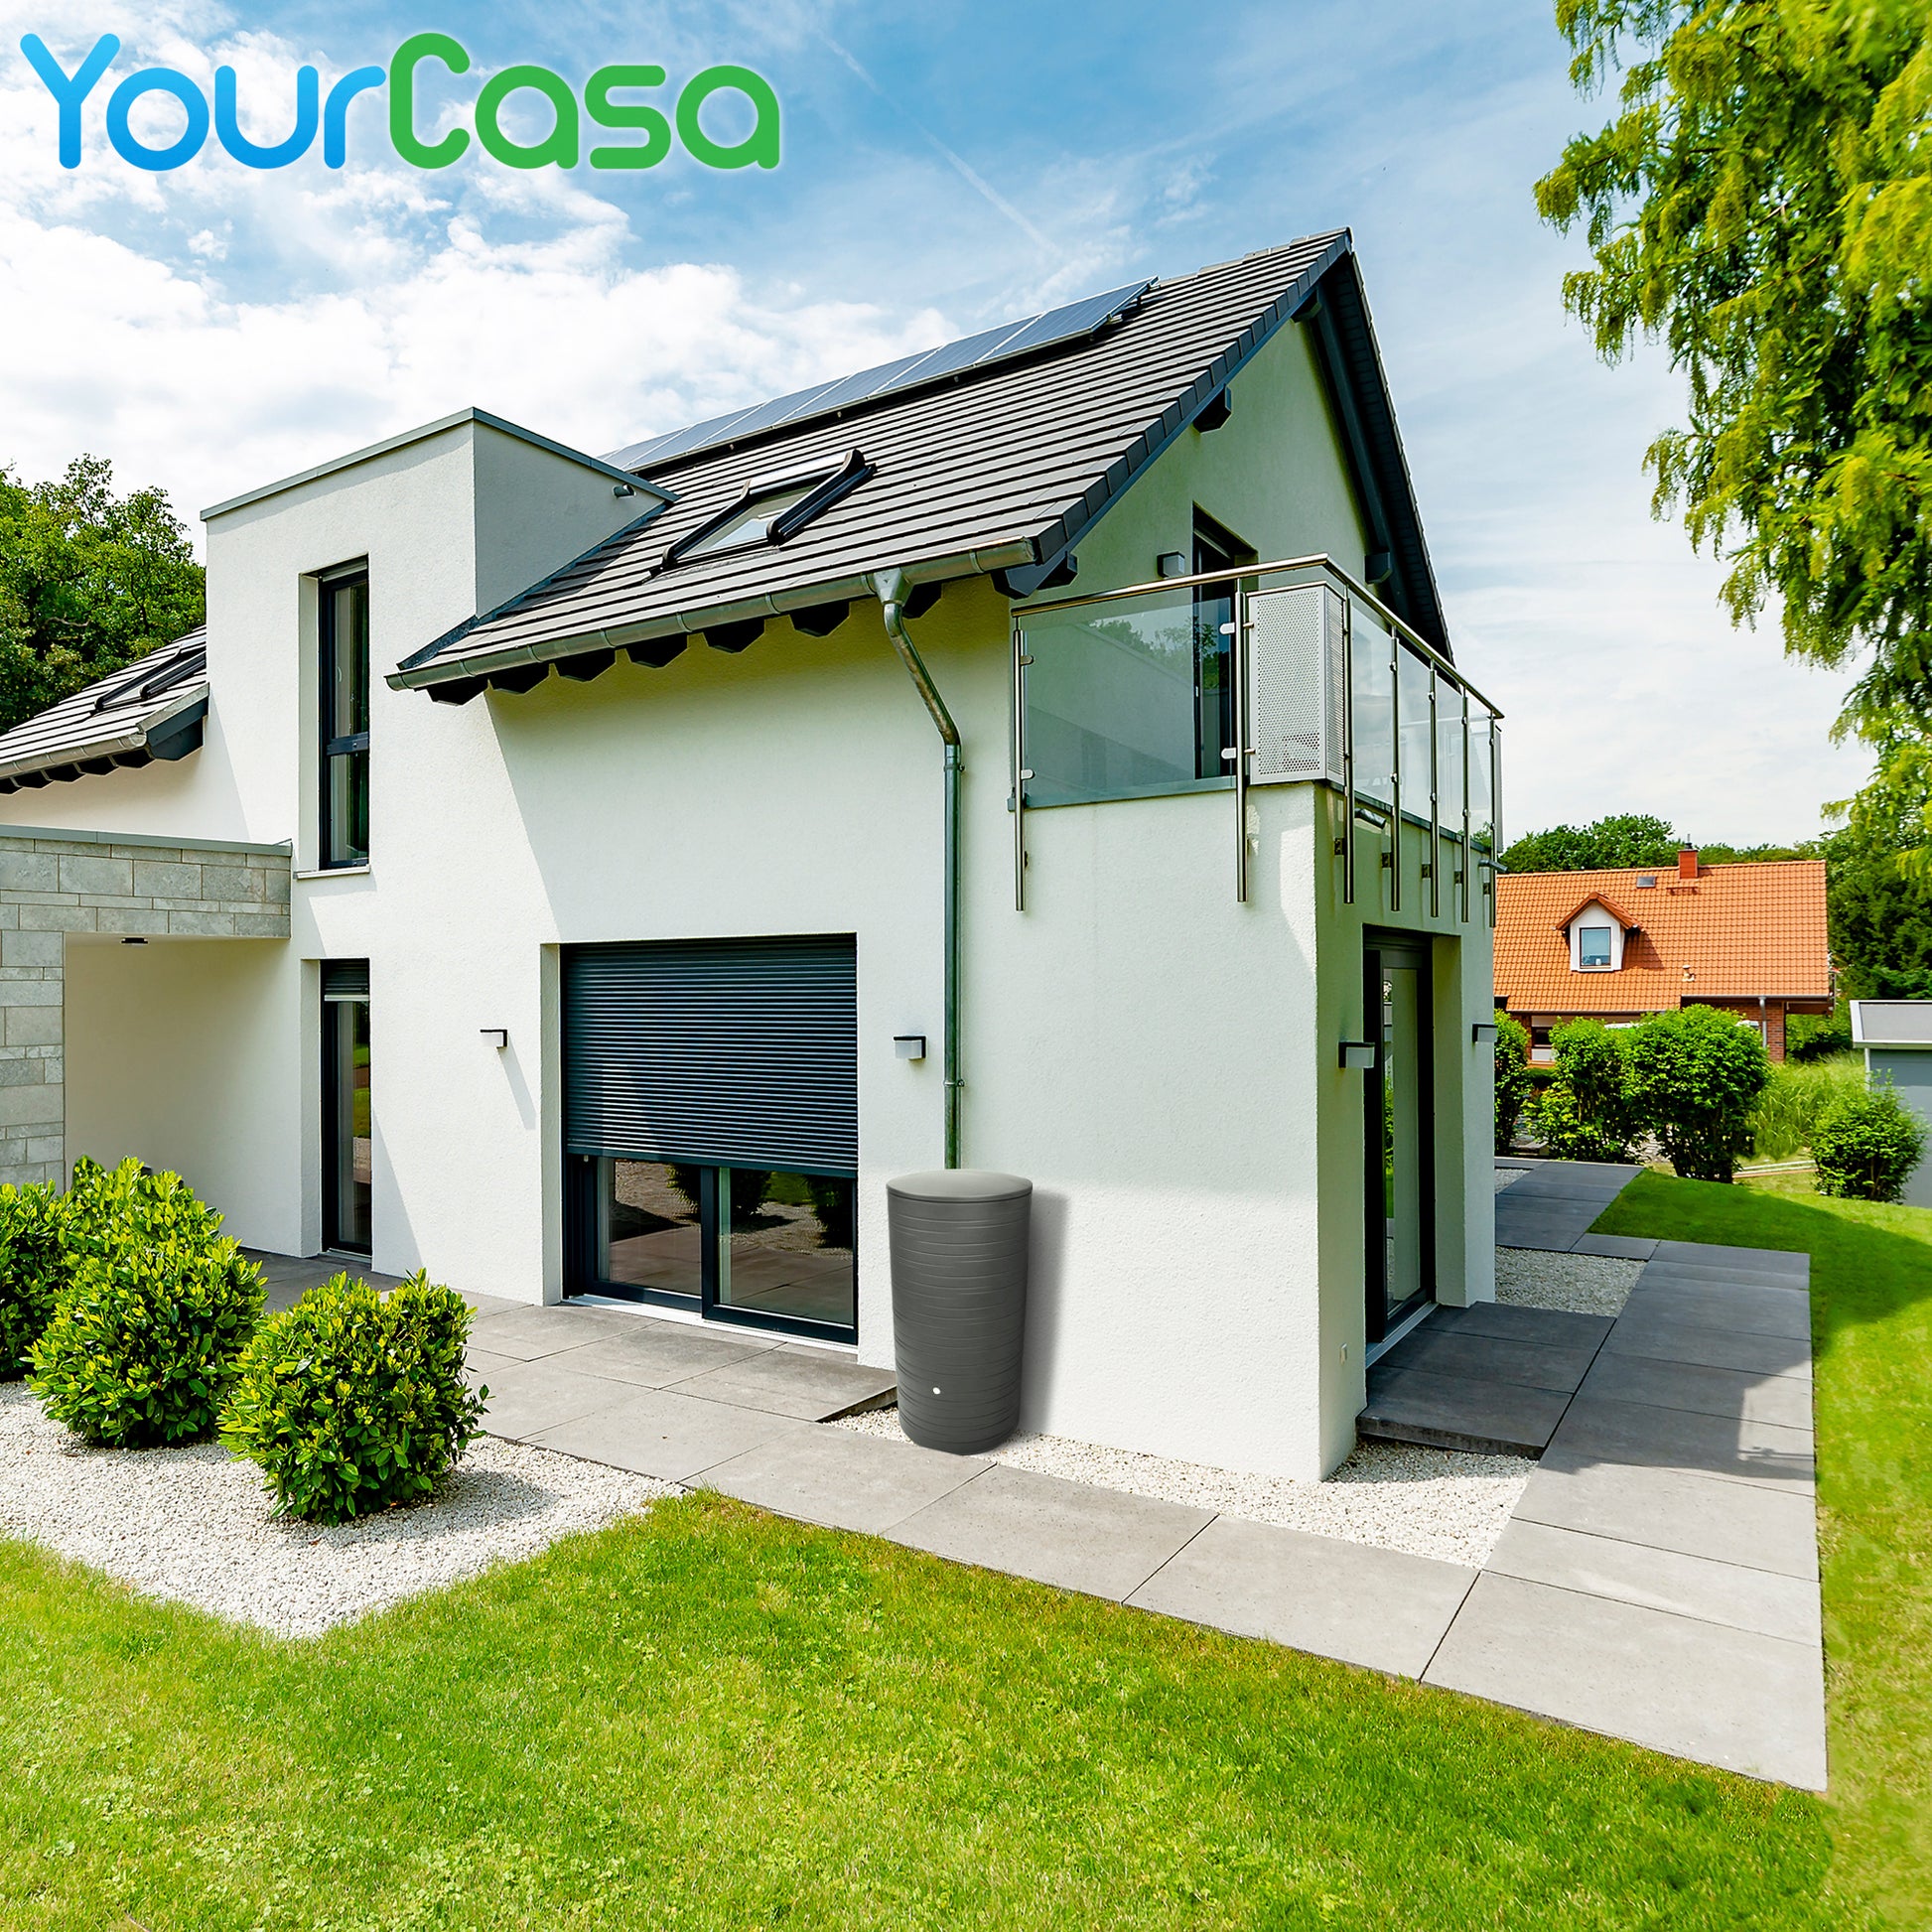 Ein Haus mit Solarpanel und YourCasa Regentonne auf dem Dach.